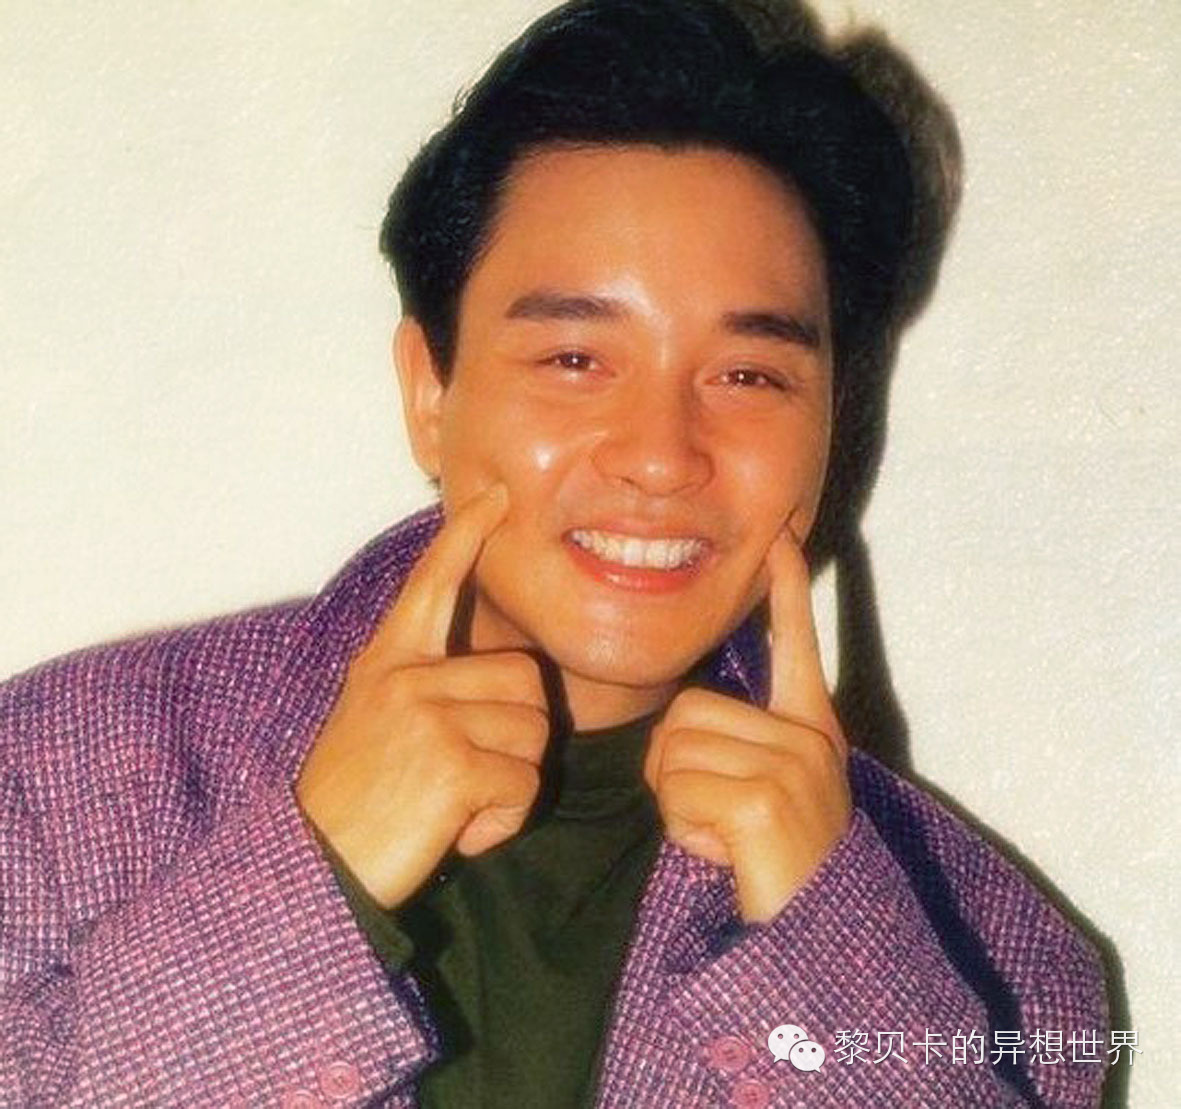 他也有过这么萌的拍照姿势~↓↓↓1981年,张国荣主演的剧集《甜甜二十